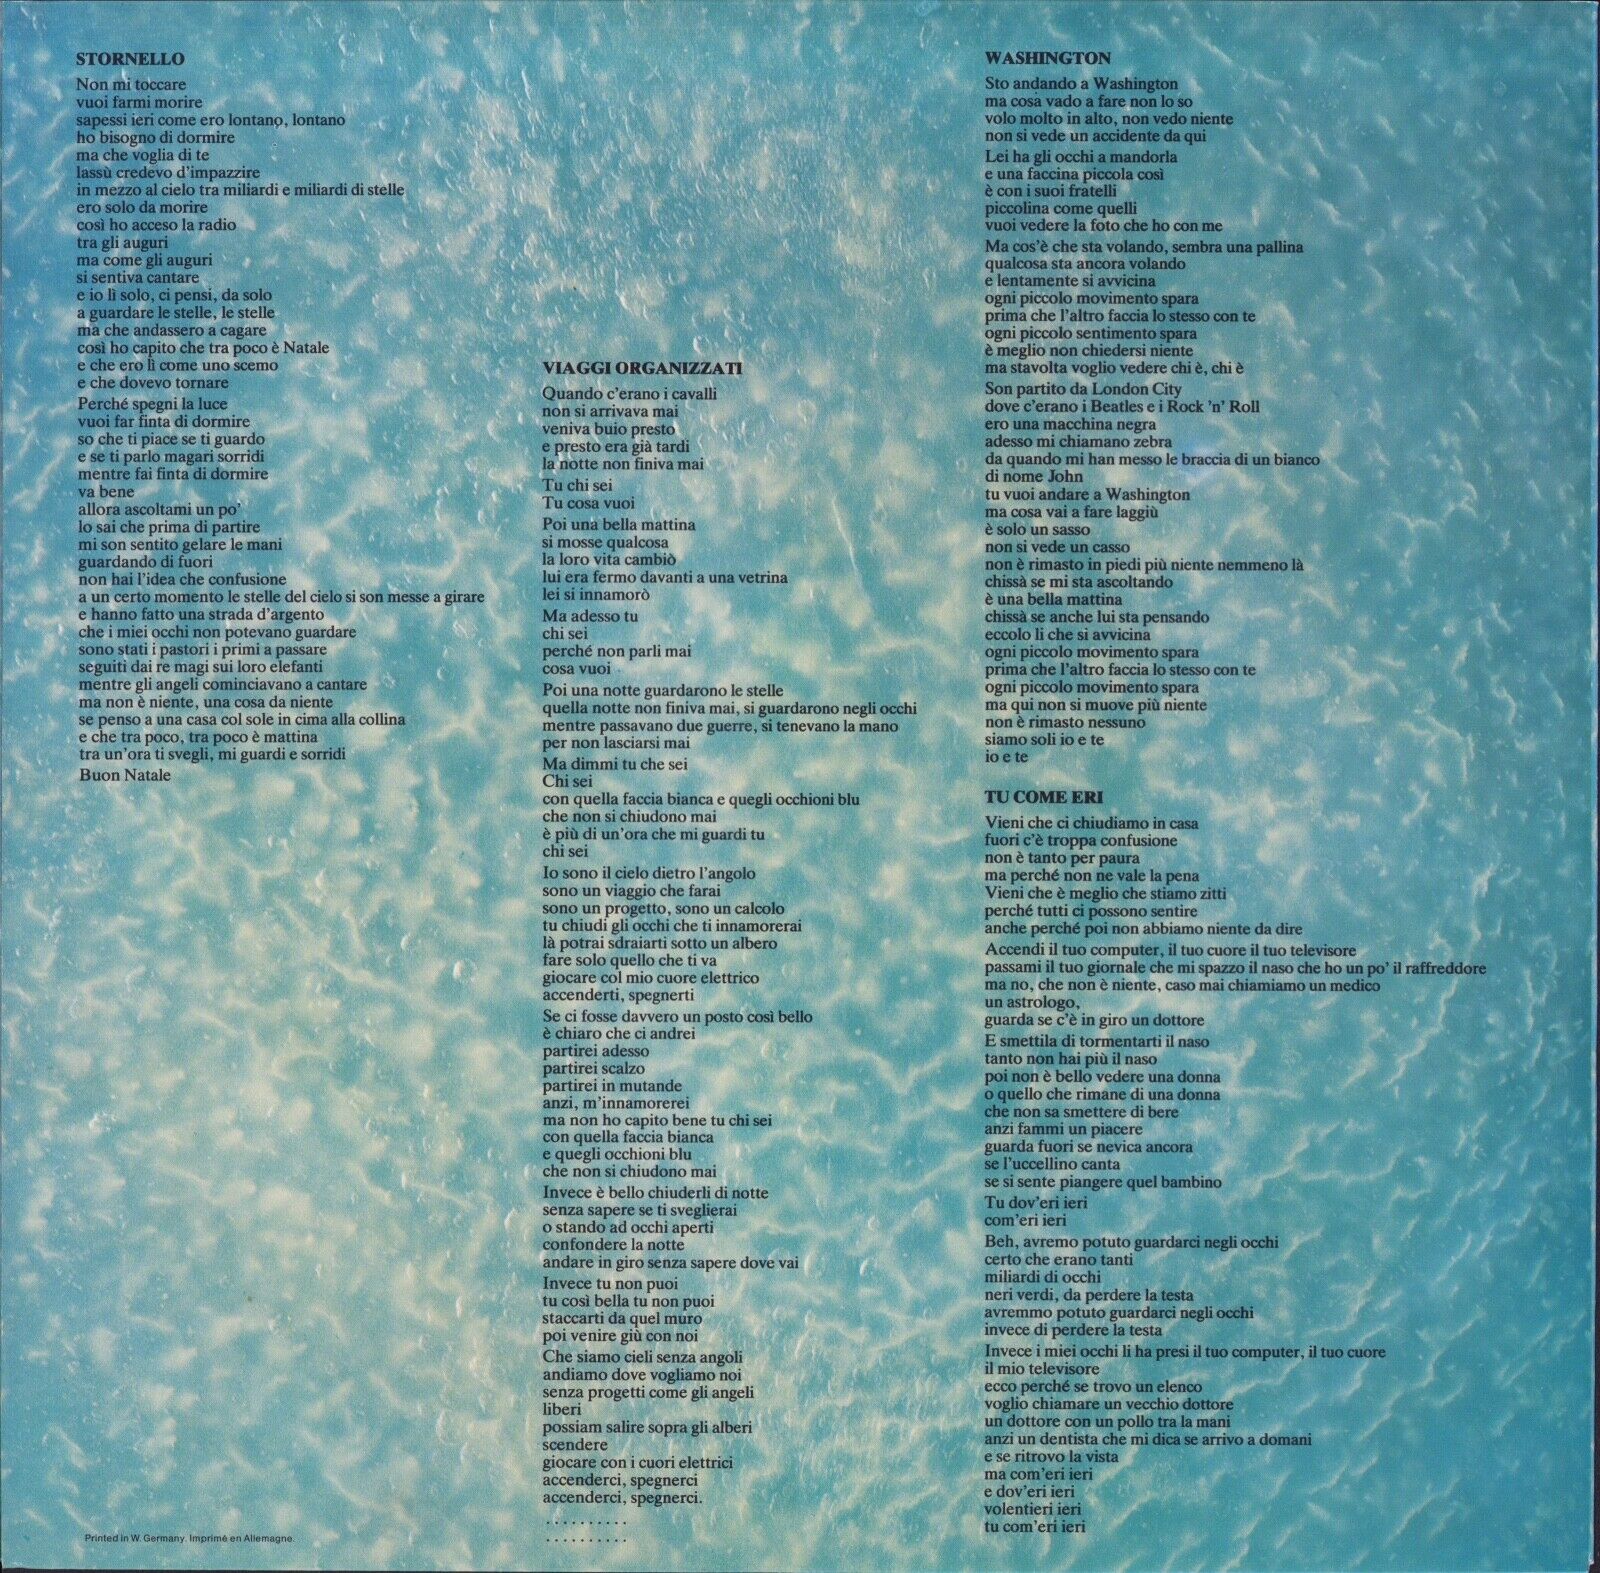 Lucio Dalla ‎- Viaggi Organizzati Vinyl LP